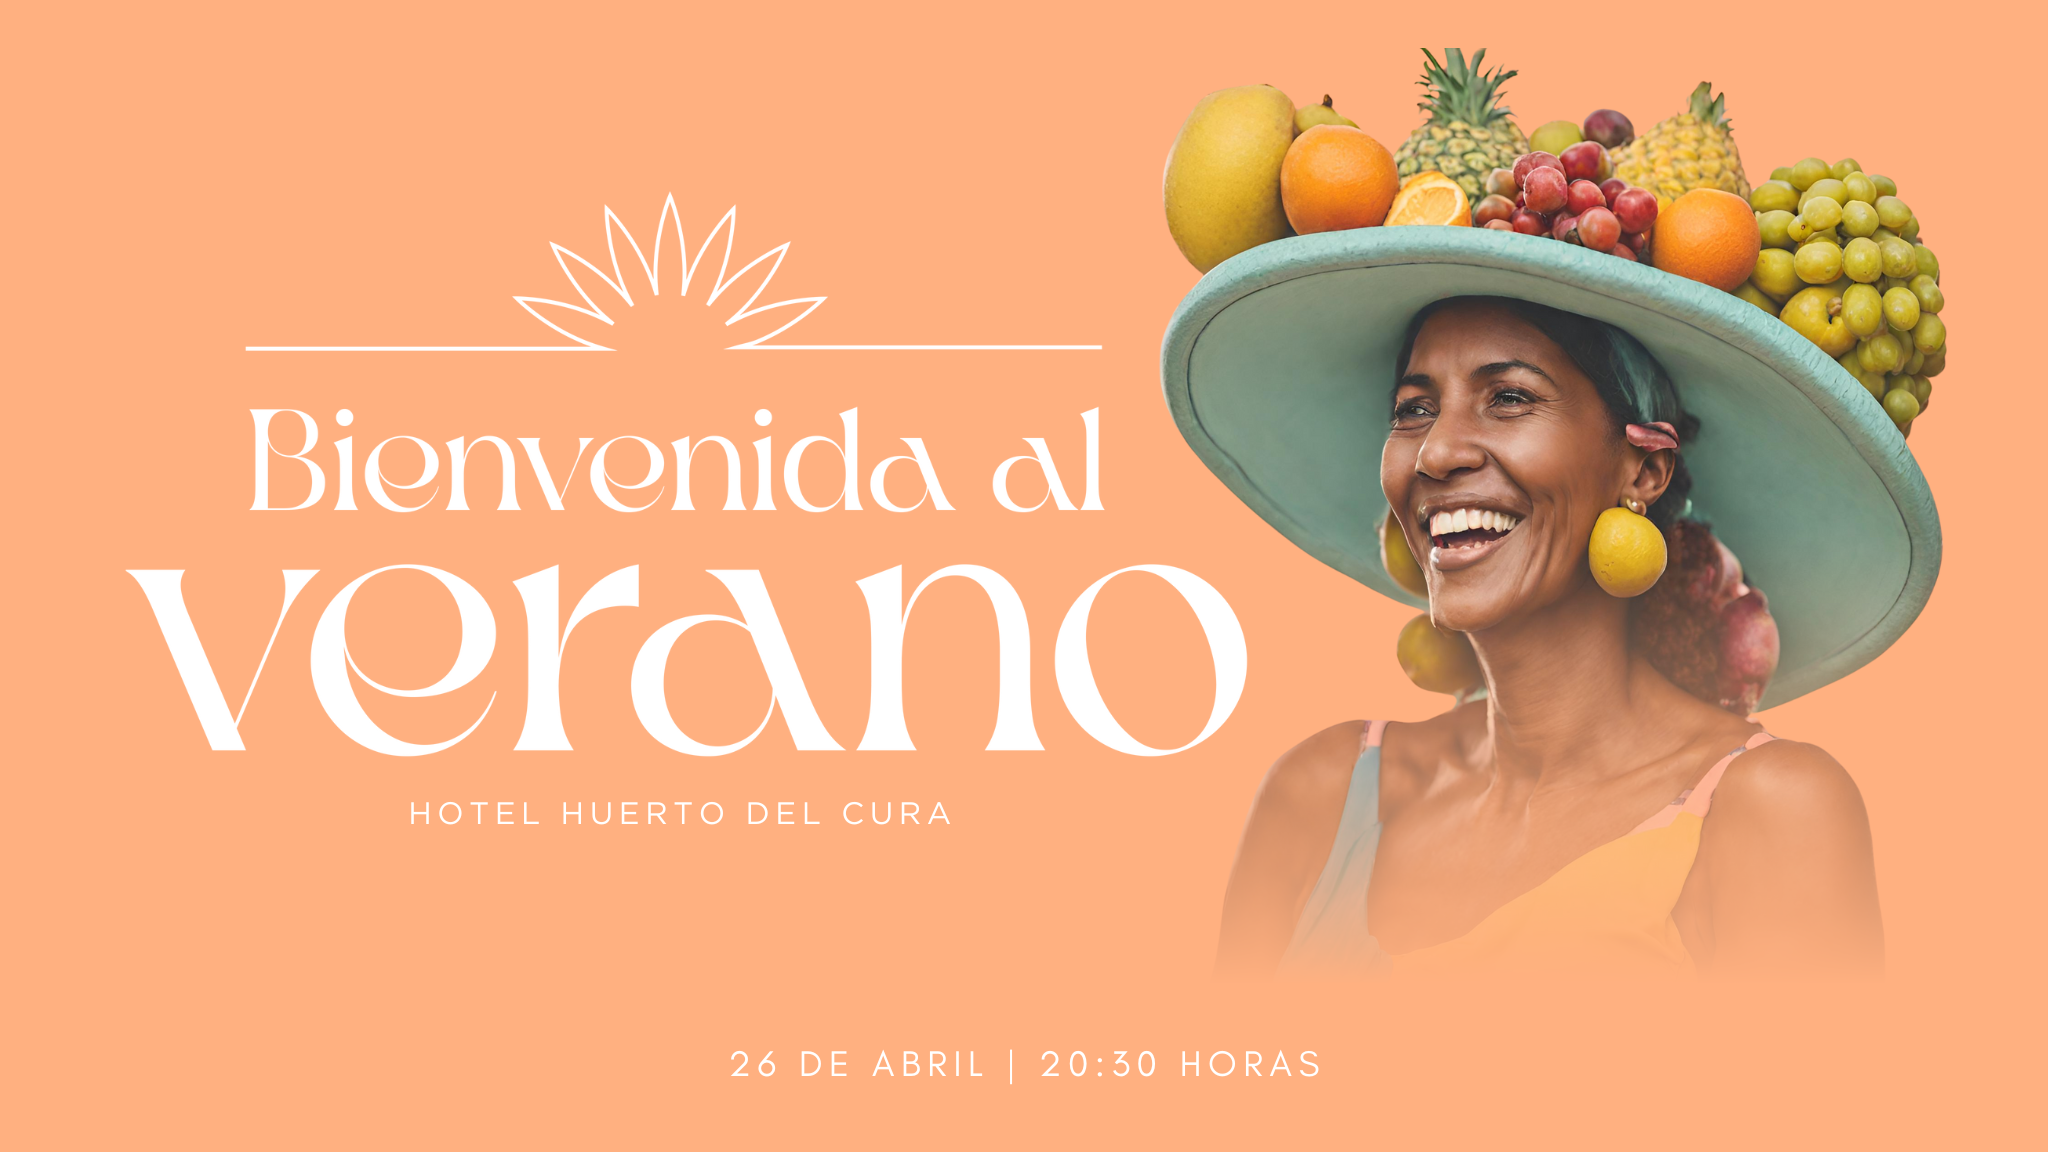 un cartel de bienvenida al verano con una mujer con un sombrero lleno de frutas